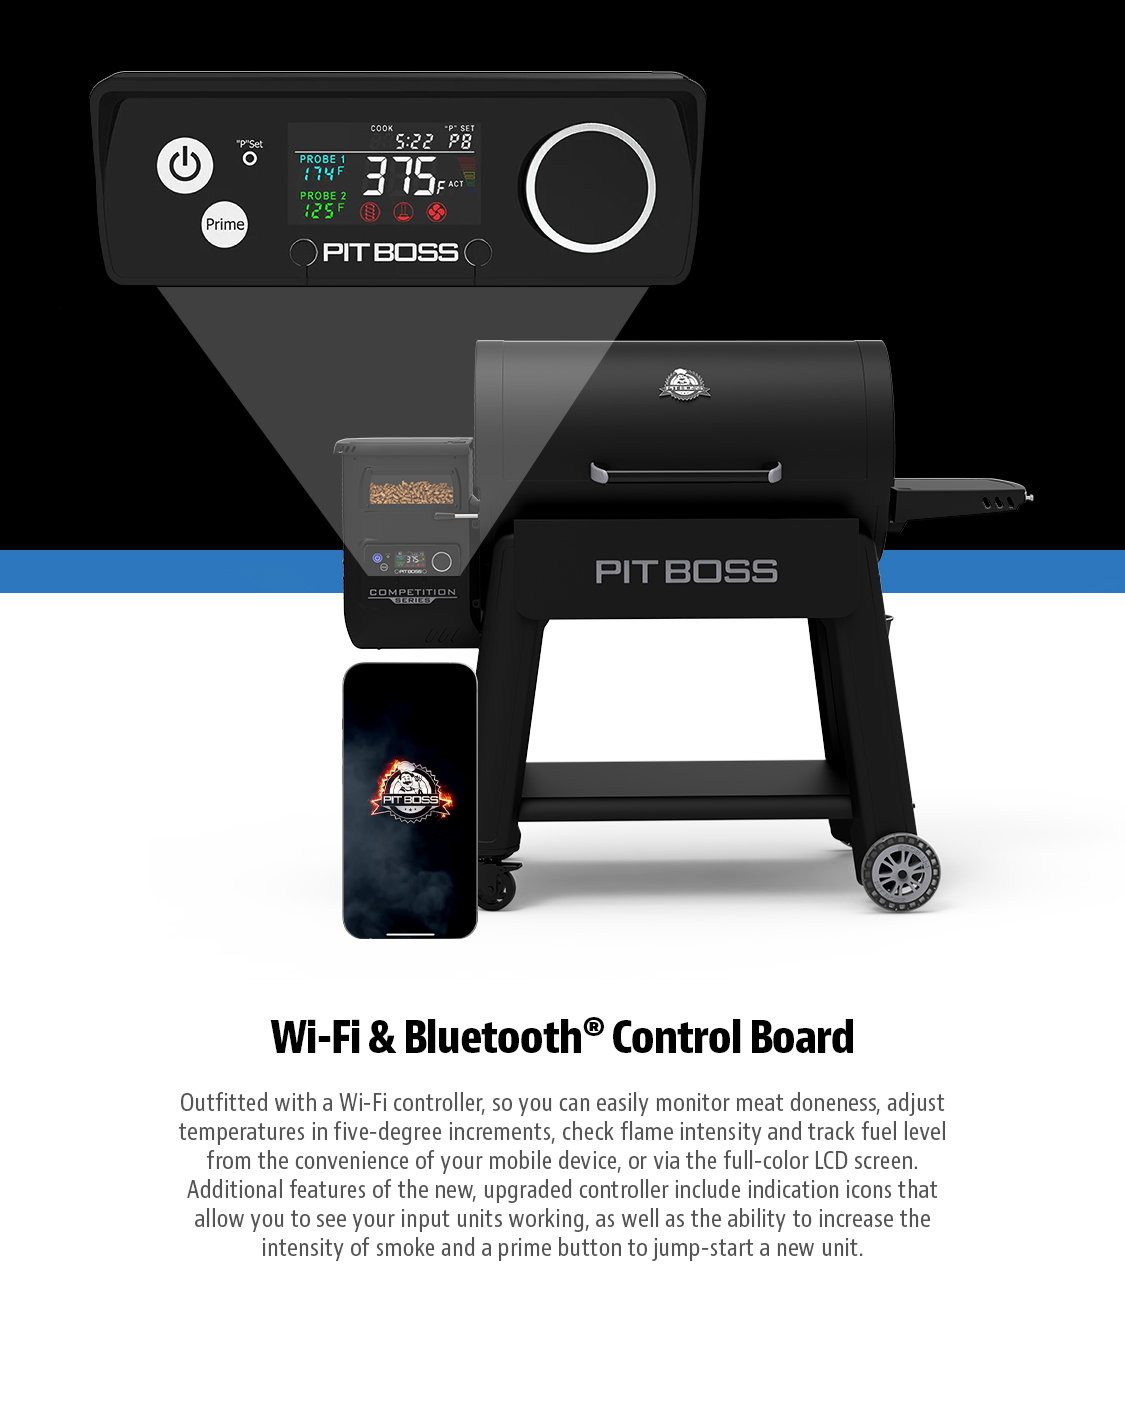 WIfi & Bluetooth Control Board Mobile